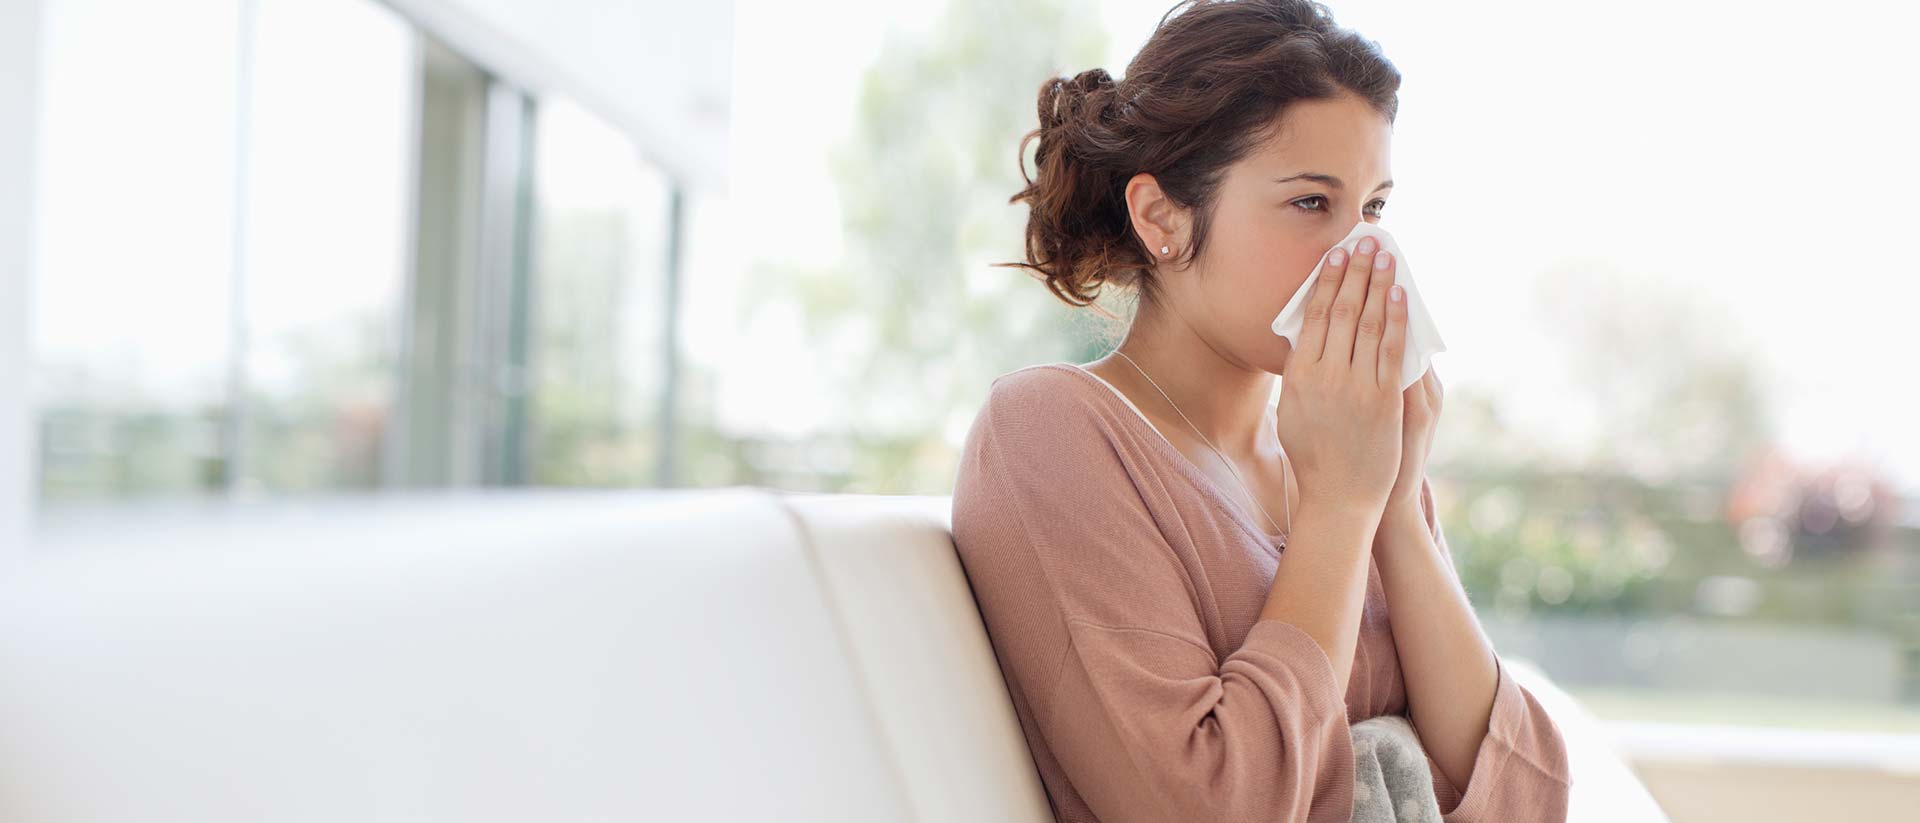 Gripe y resfrío – Las infecciones virales más comunes